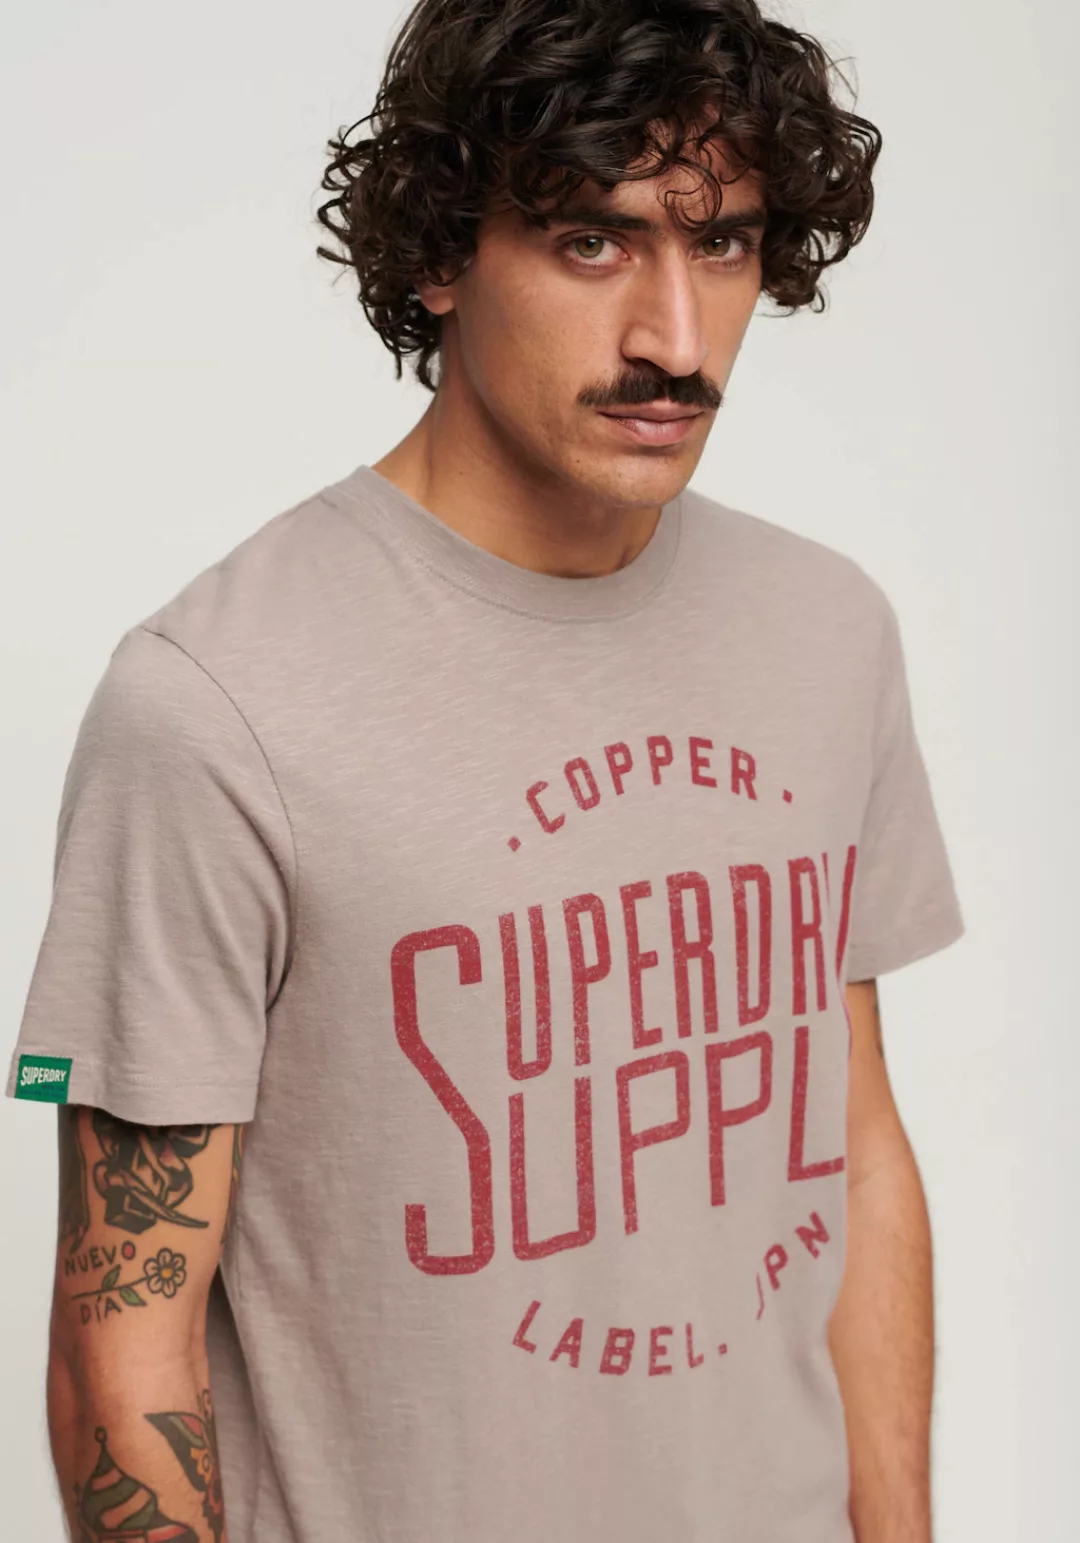 Superdry T-Shirt COPPER LABEL WORKWEAR TEE günstig online kaufen